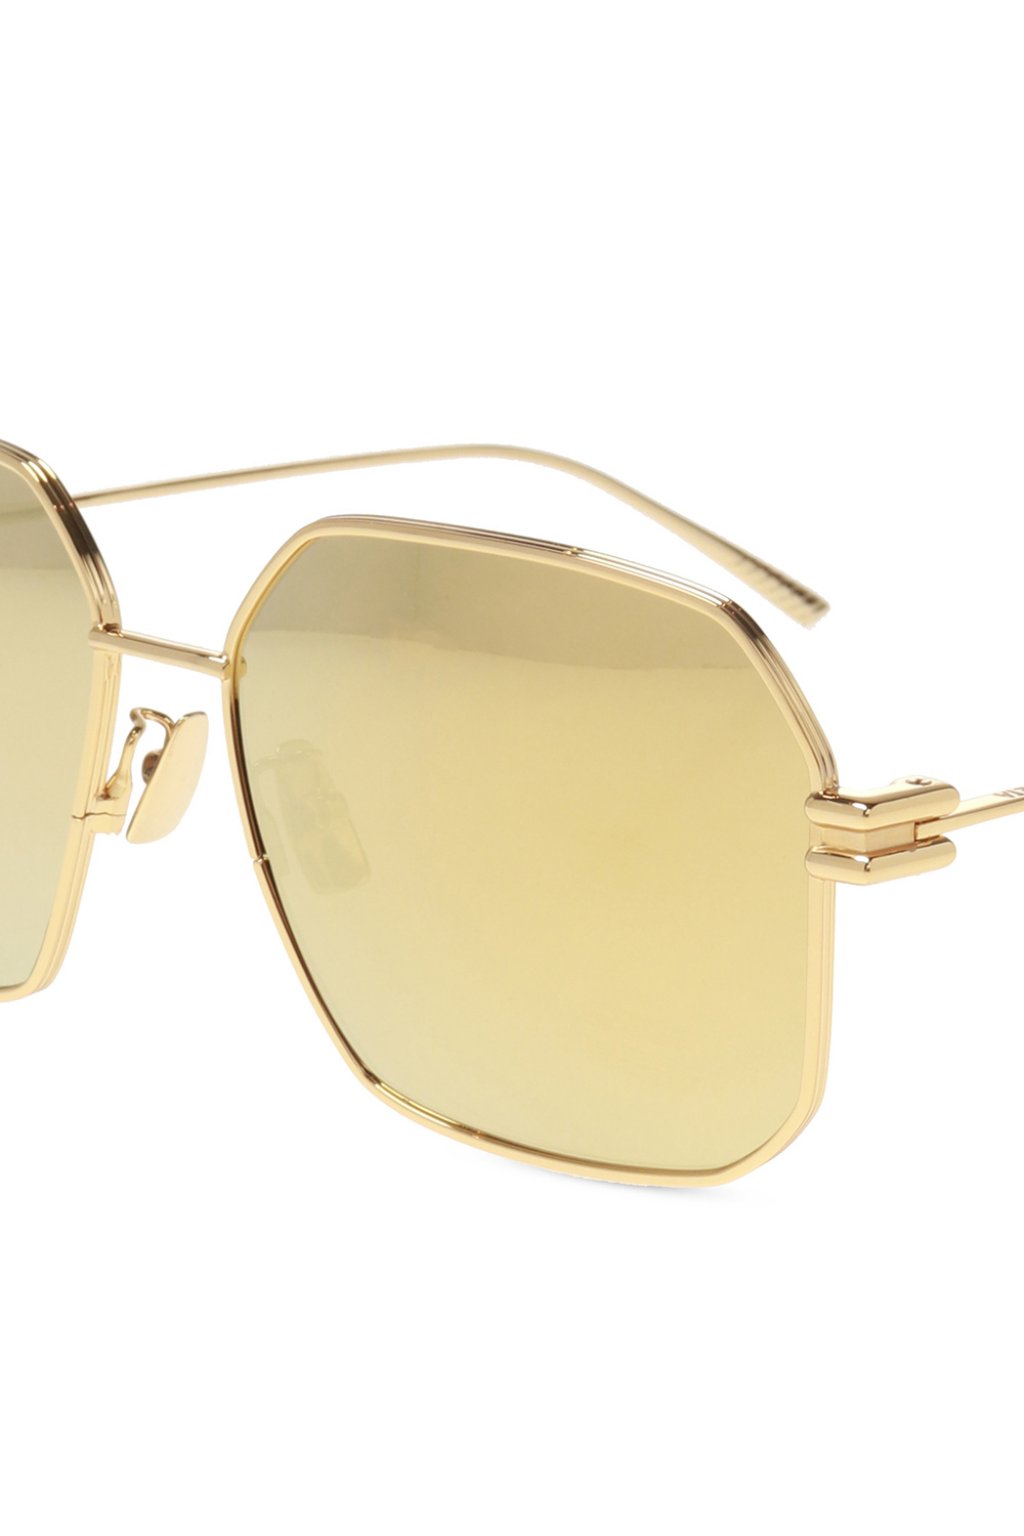 Brand New Bottega Veneta Sunglasses BV 1012/S-004 Gold/Green Men Women  Unisex 889652267142